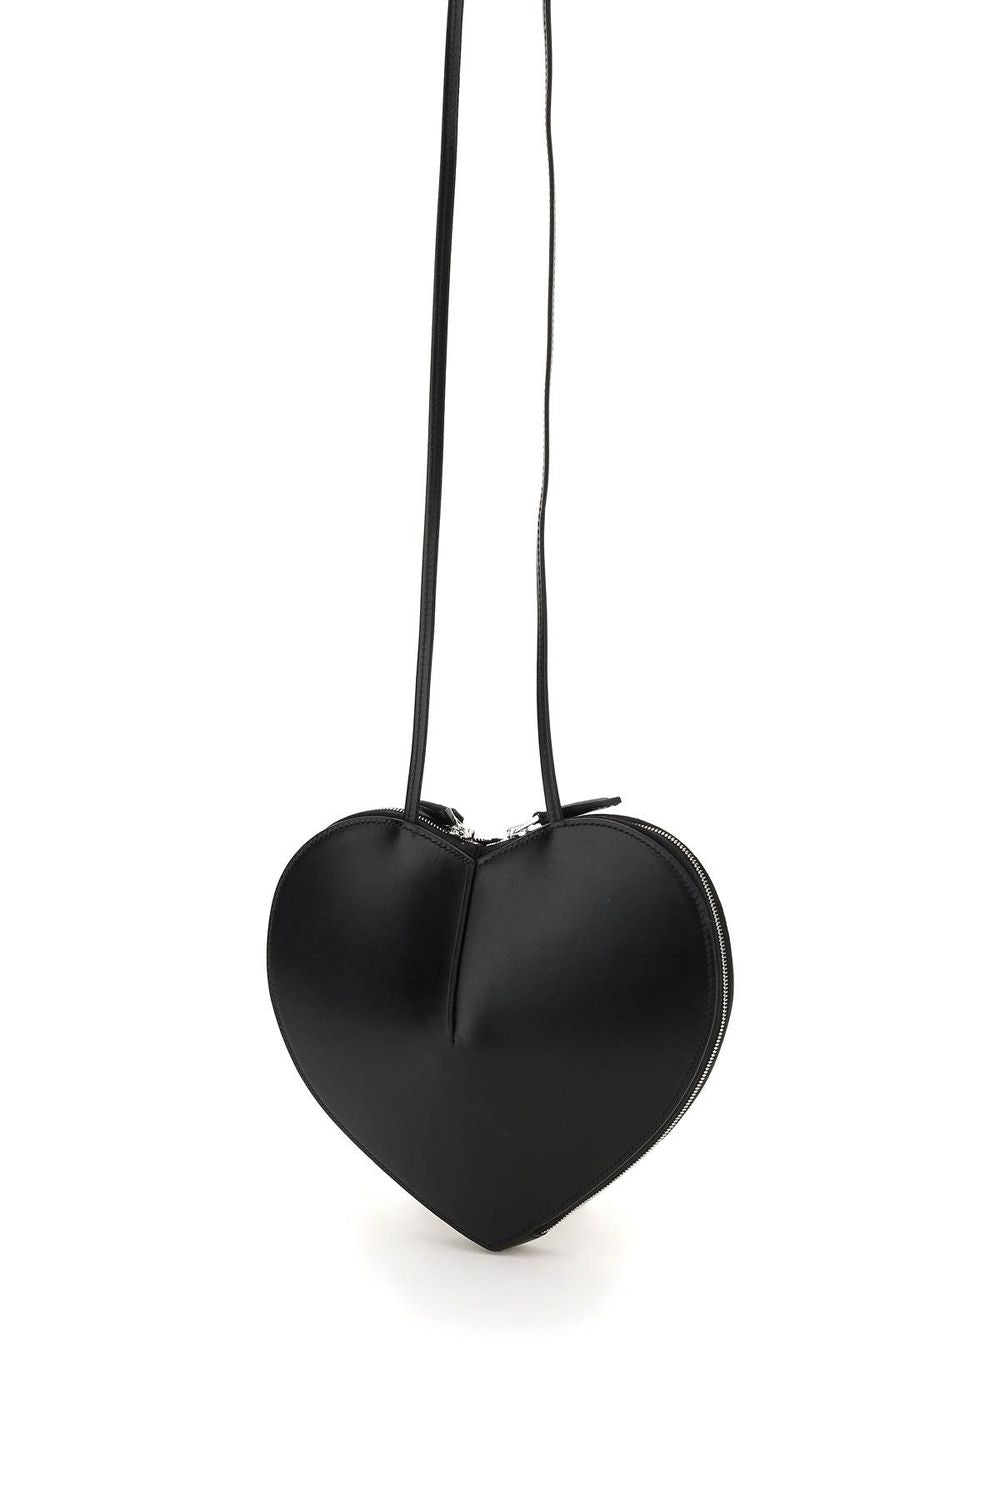 ALAIA Le Coeur Handbag in black